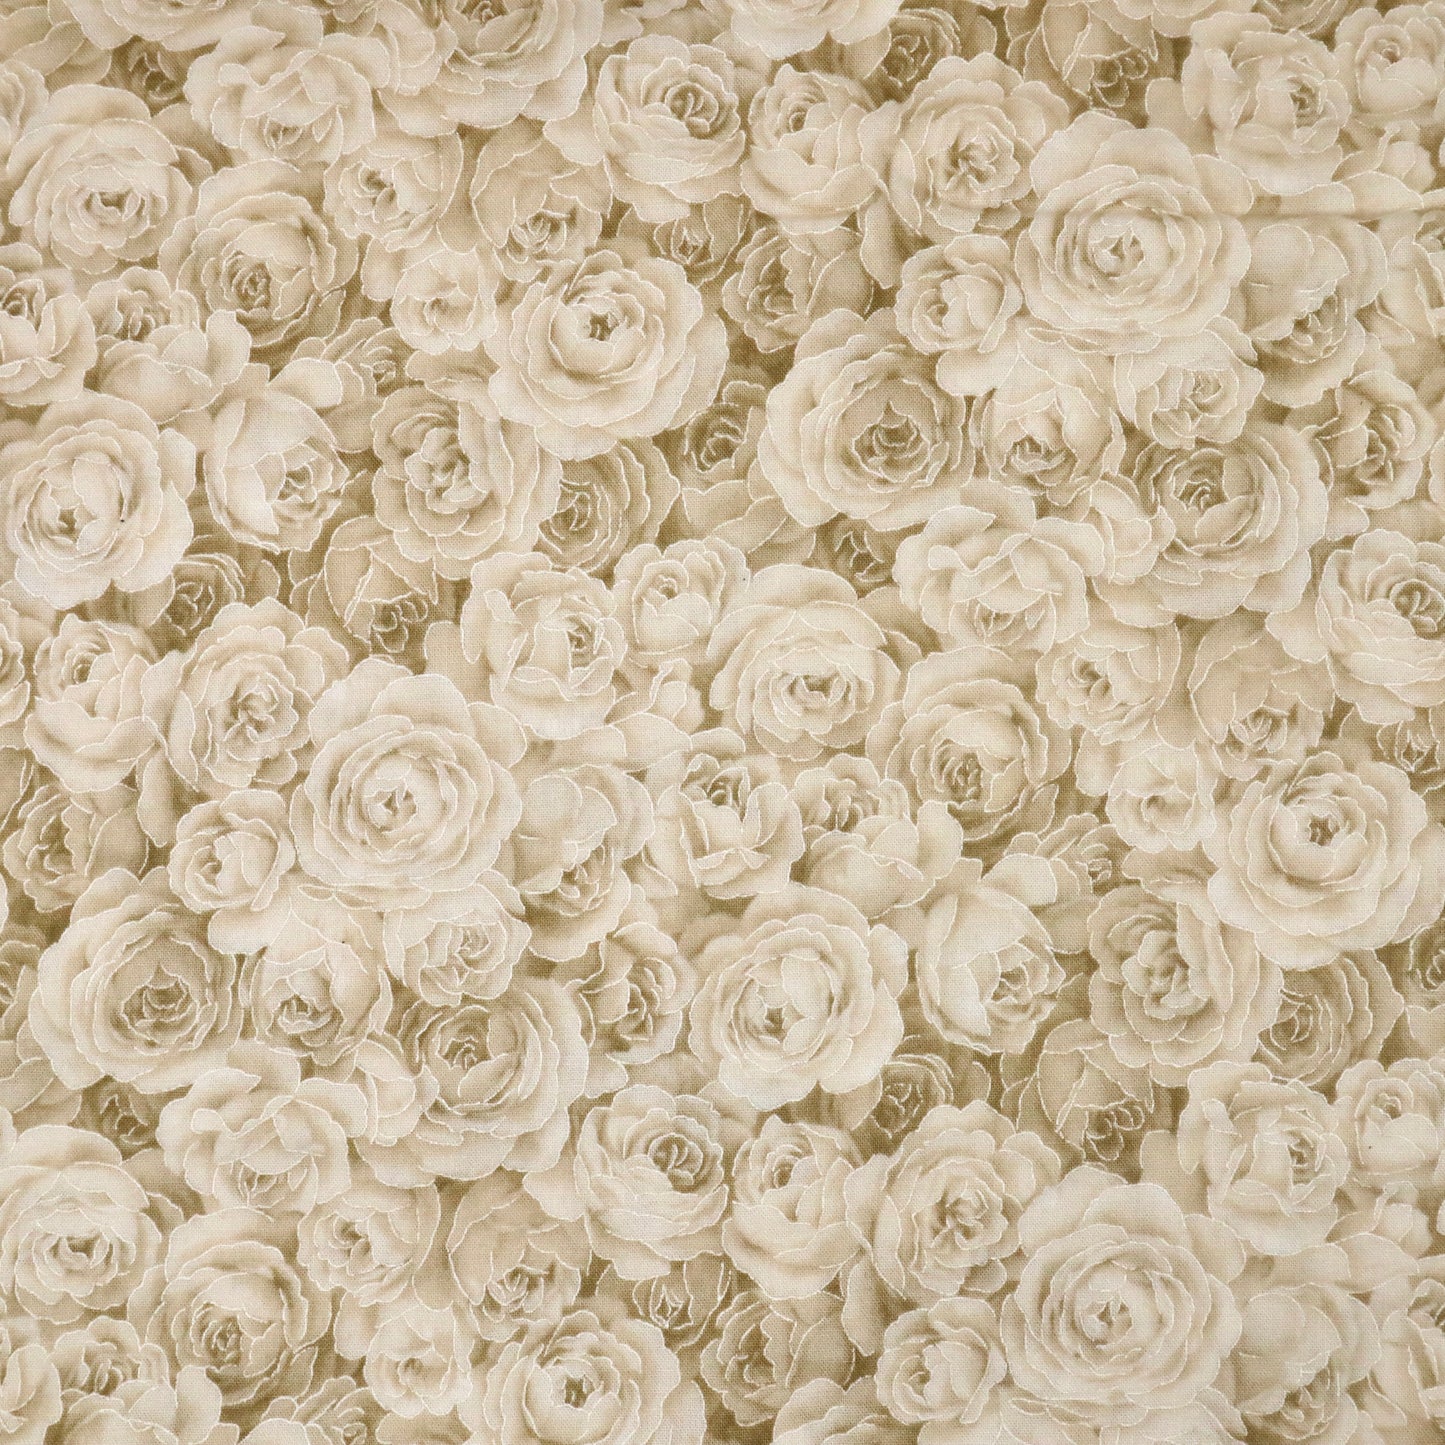 Metallic Cream Roses - Quilting Cotton